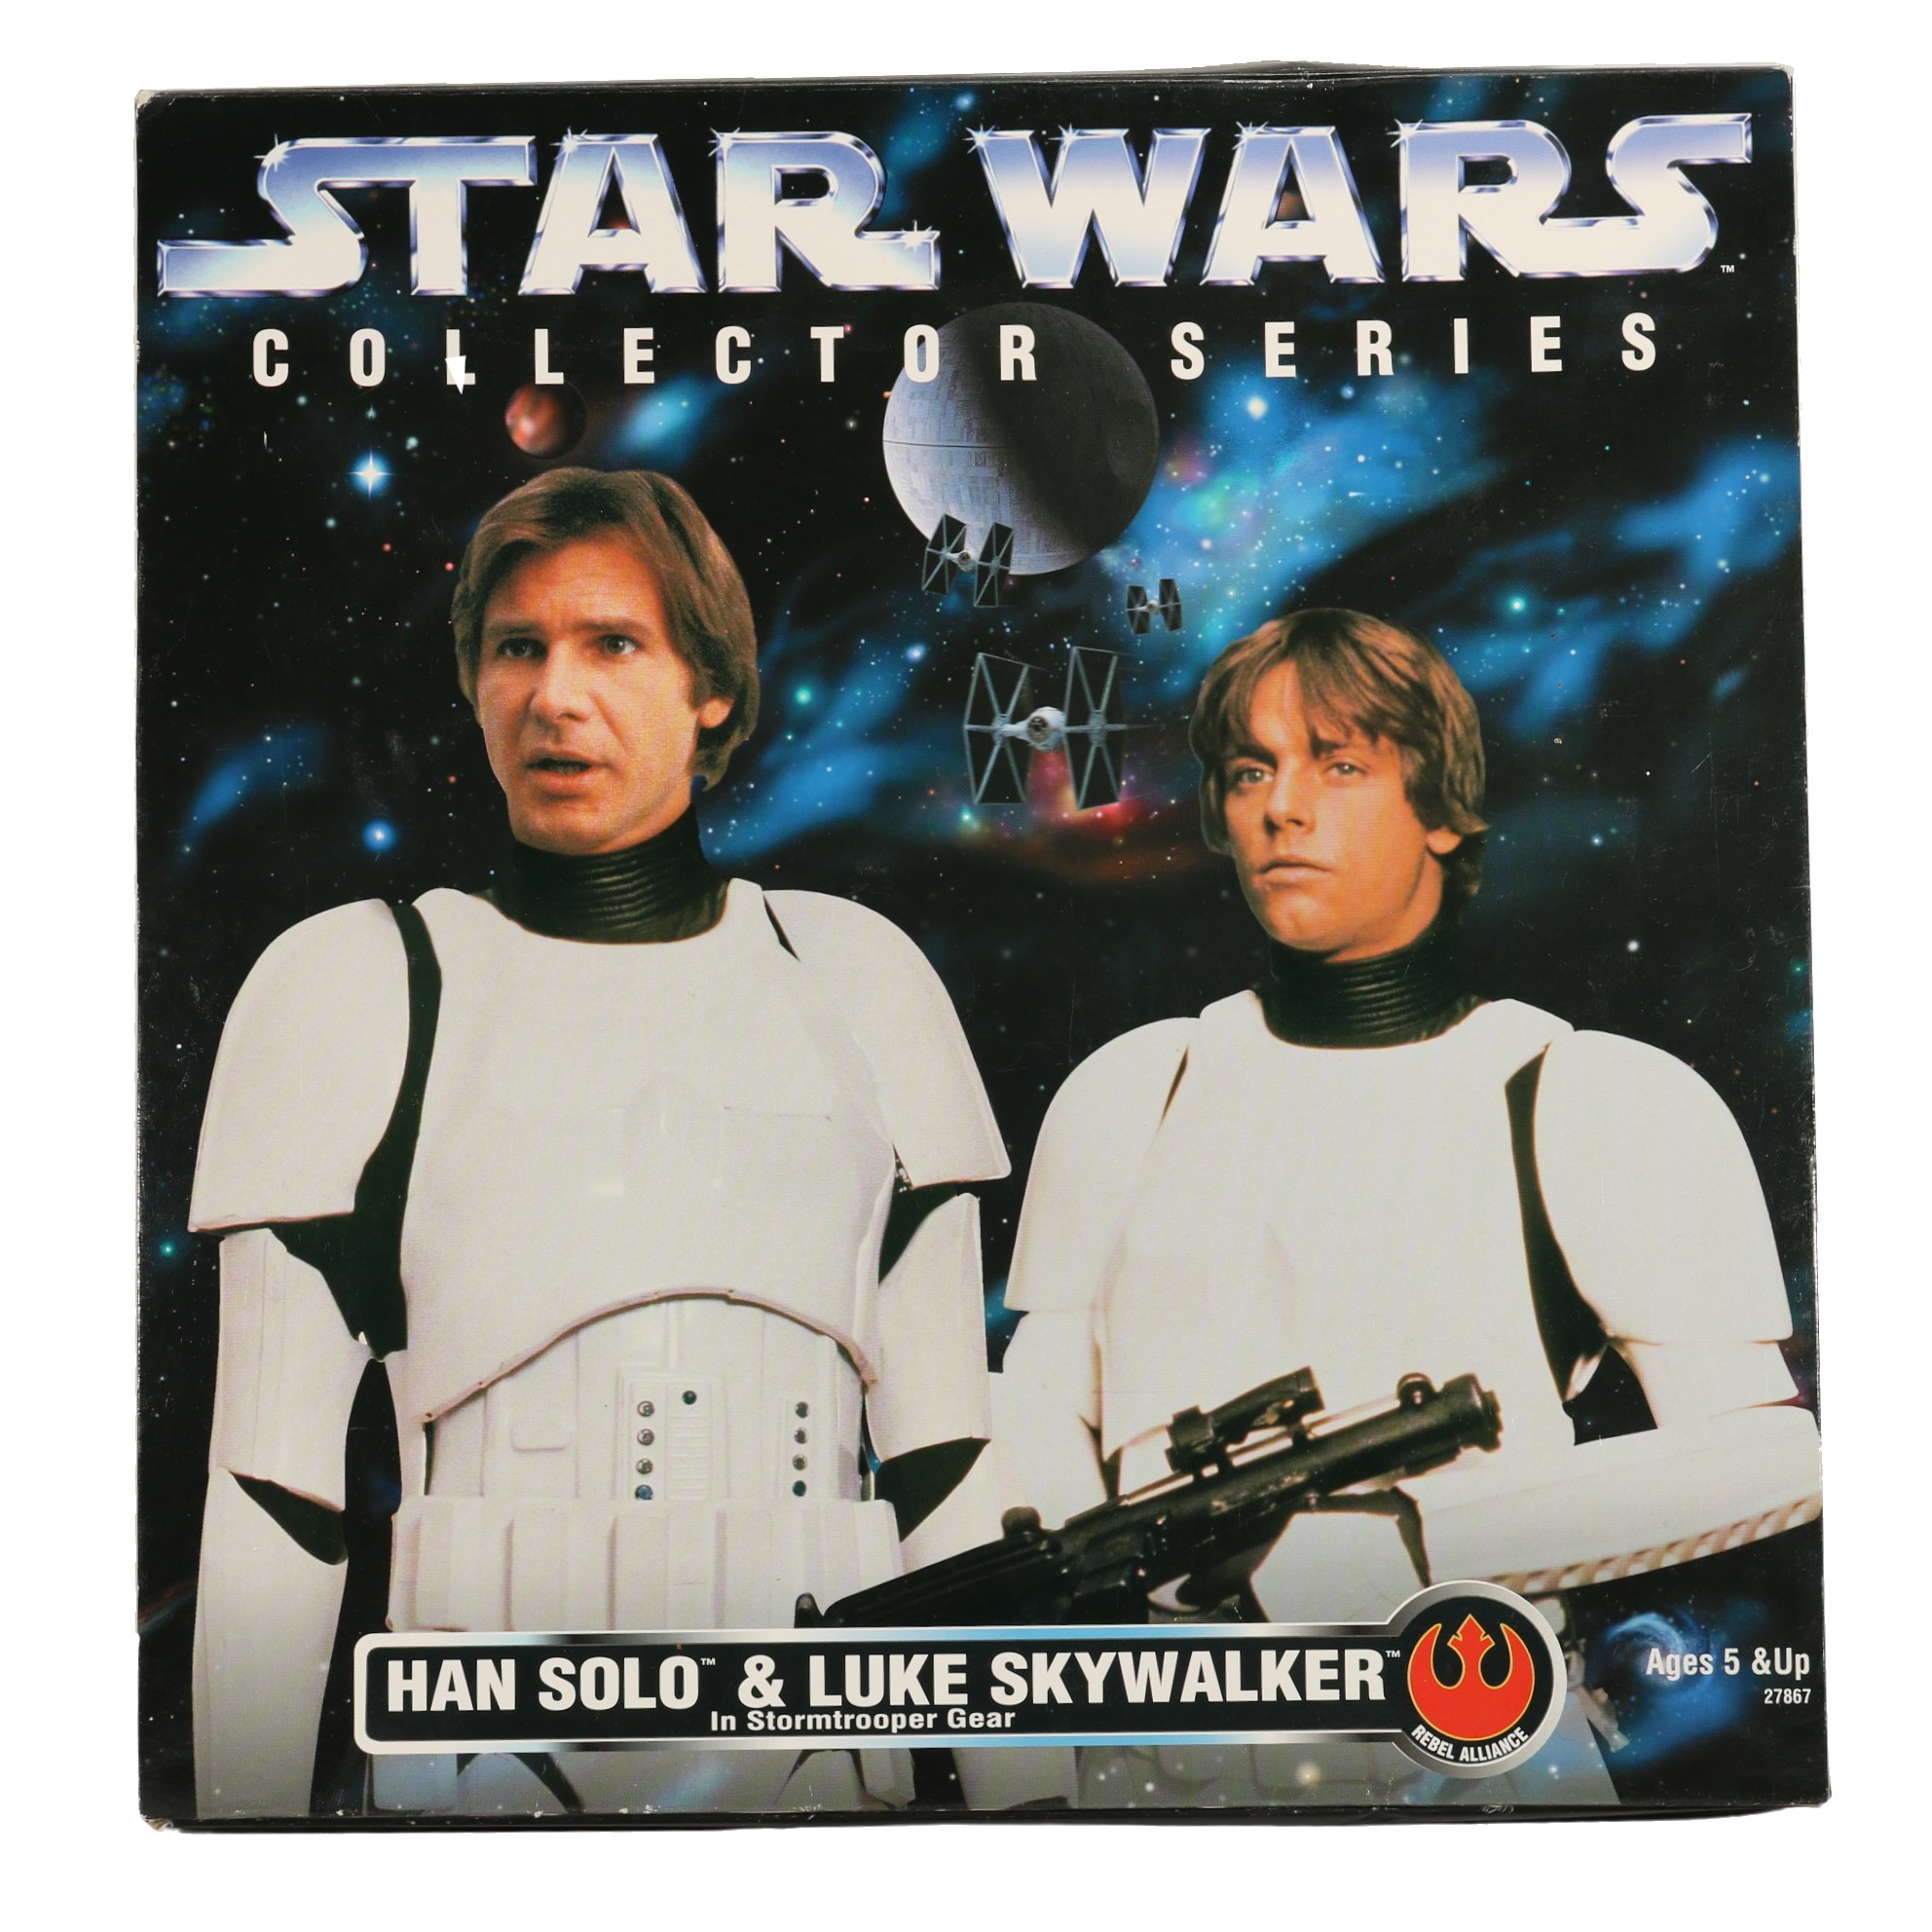 Star Wars - Han Solo & Luke Skywalker Stormtrooper Gear 12" / 30cm - MISB